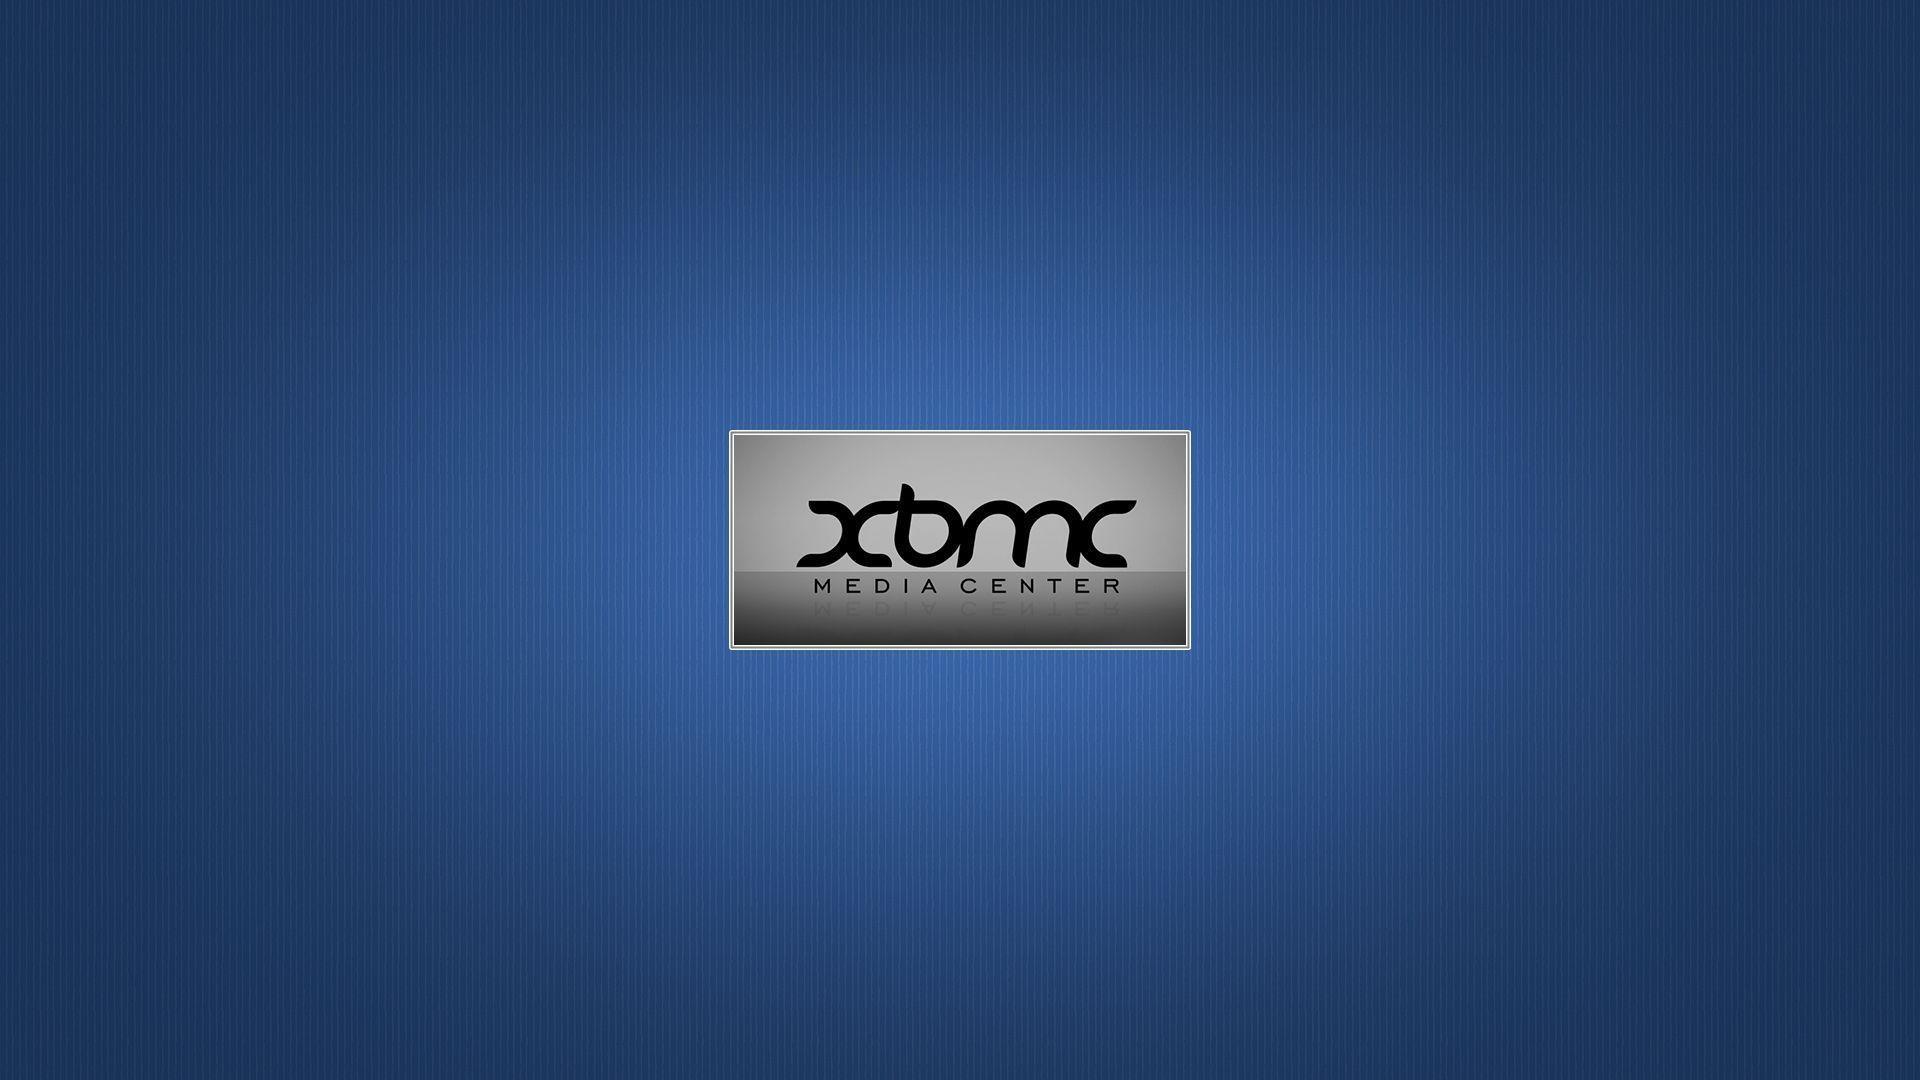 Background Xbmc